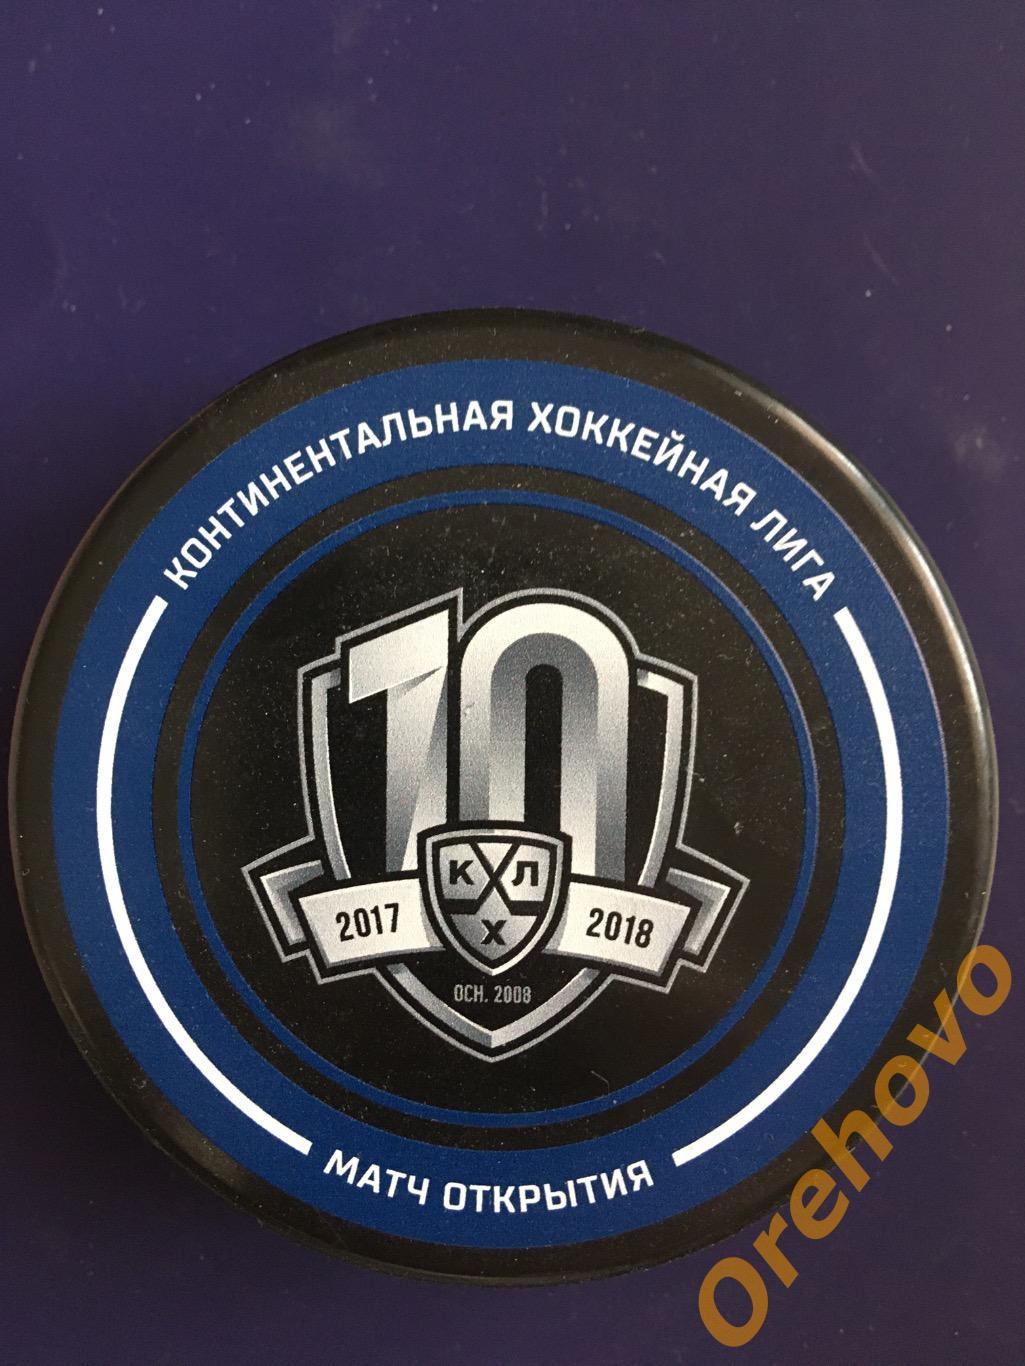 Шайба хоккейная КХЛ 2017-2018 sogaz